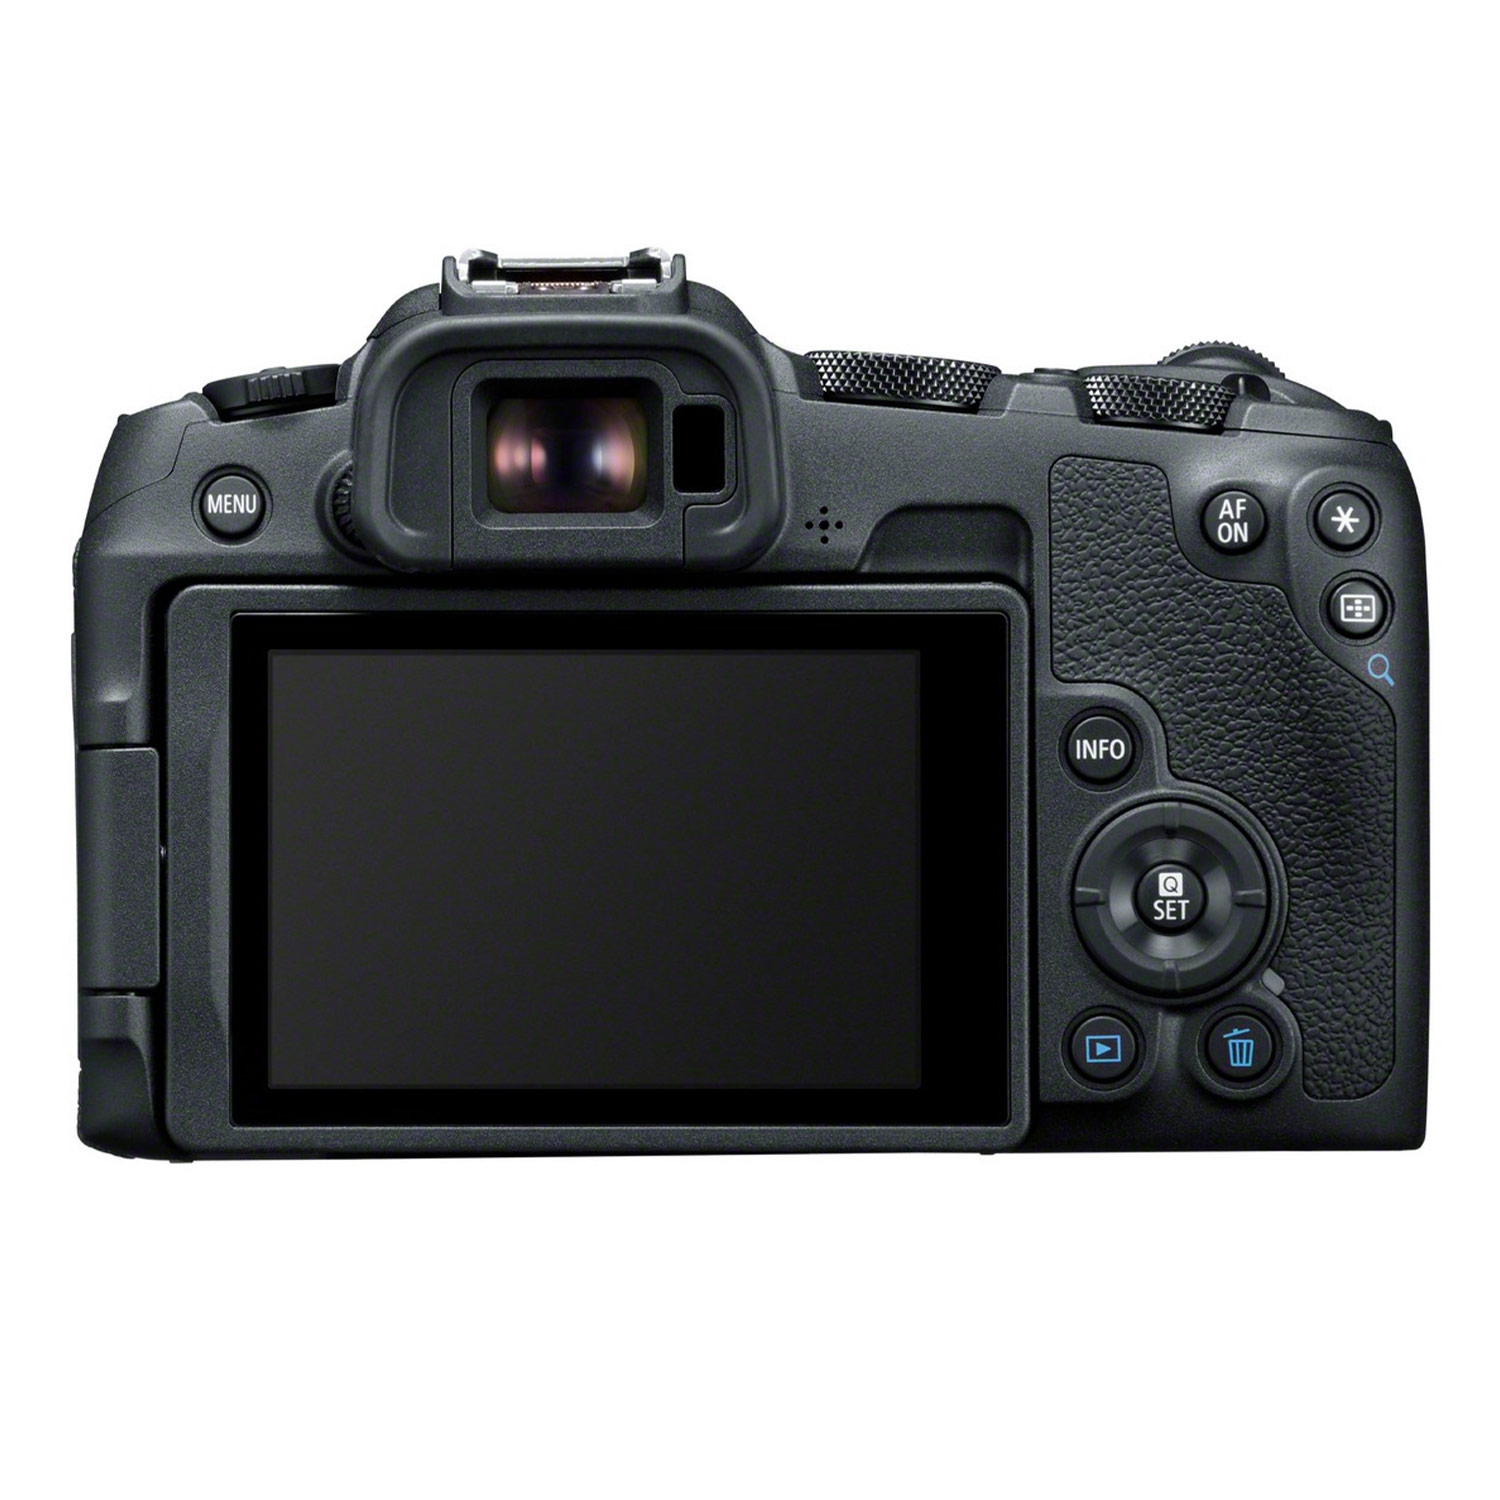 Canon EOS R8 + Canon RF 50mm 1:1.8 STM